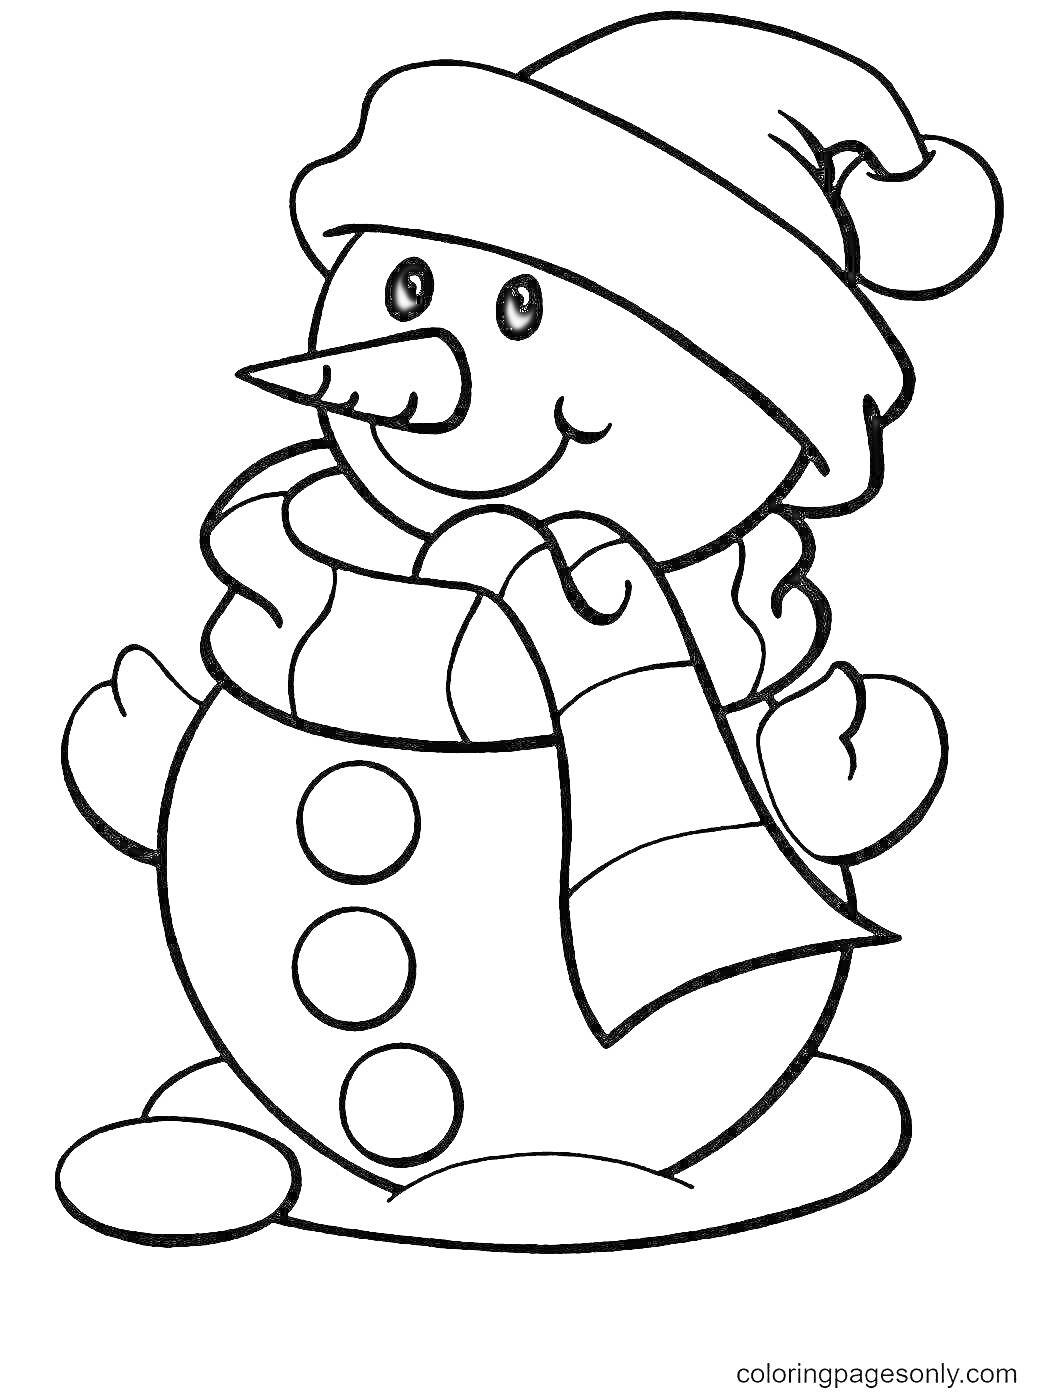 Раскраска Снеговик в шапке и шарфе с пуговицами на снегу